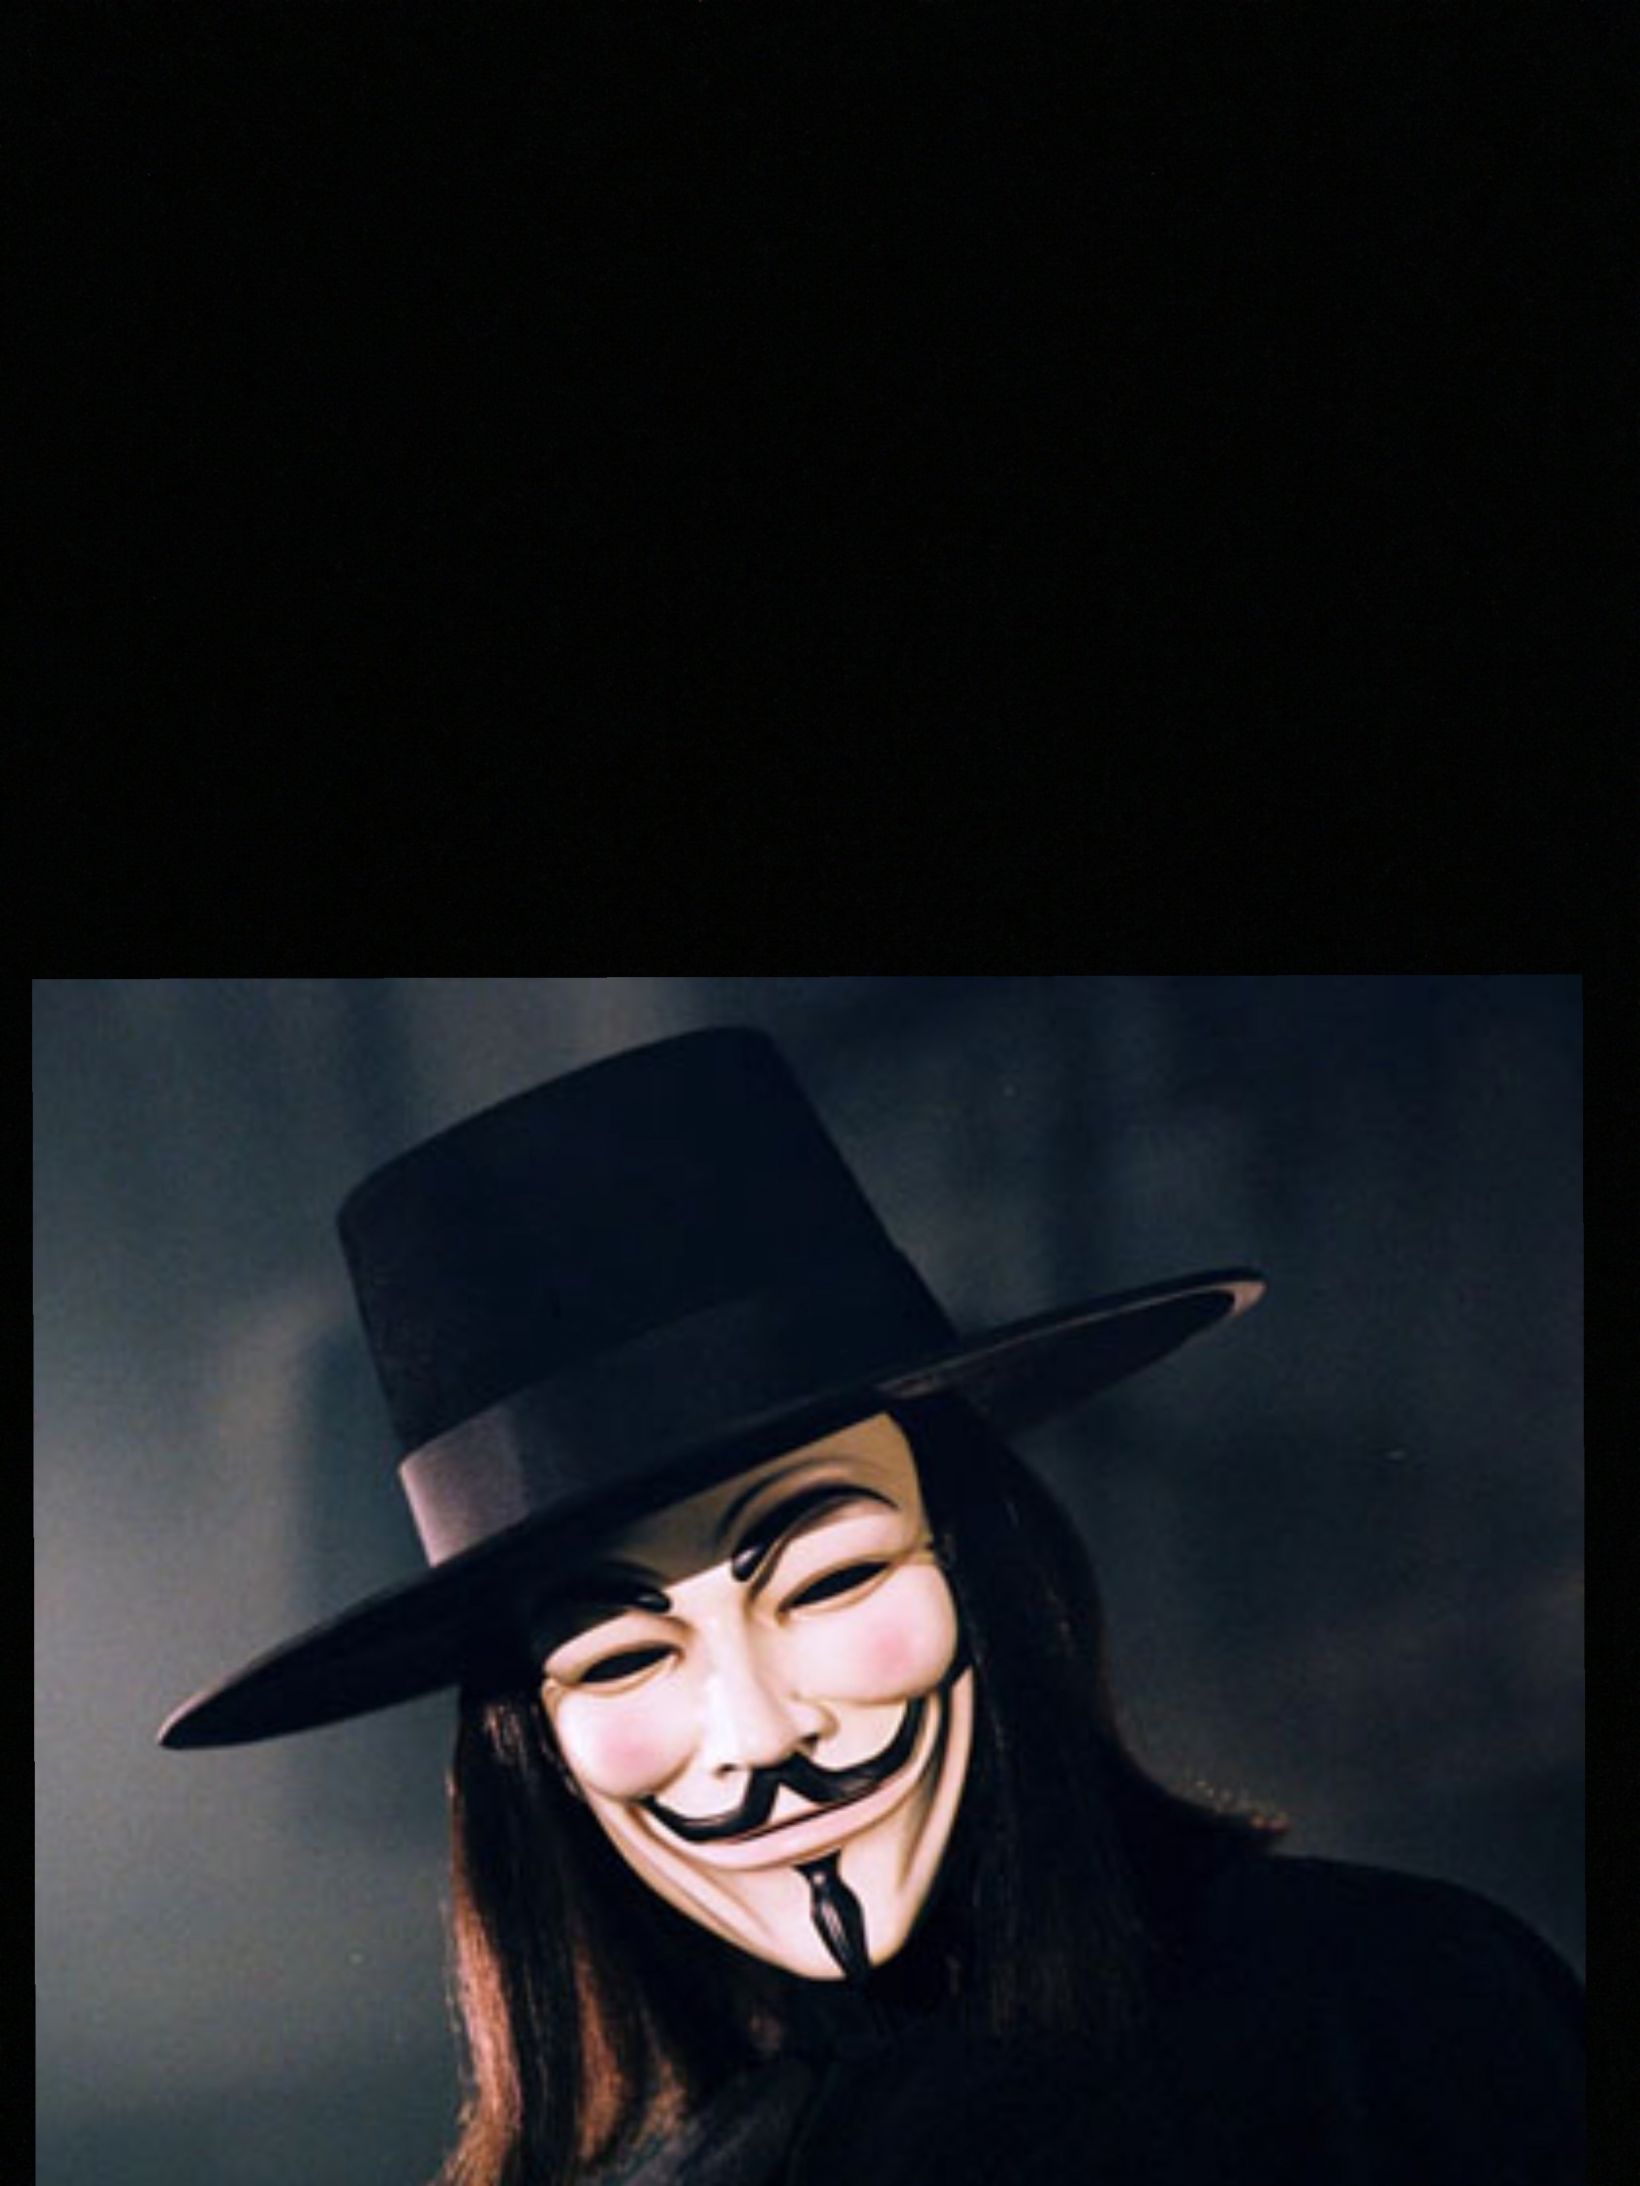 V for Vendetta statement  Blank Meme Template